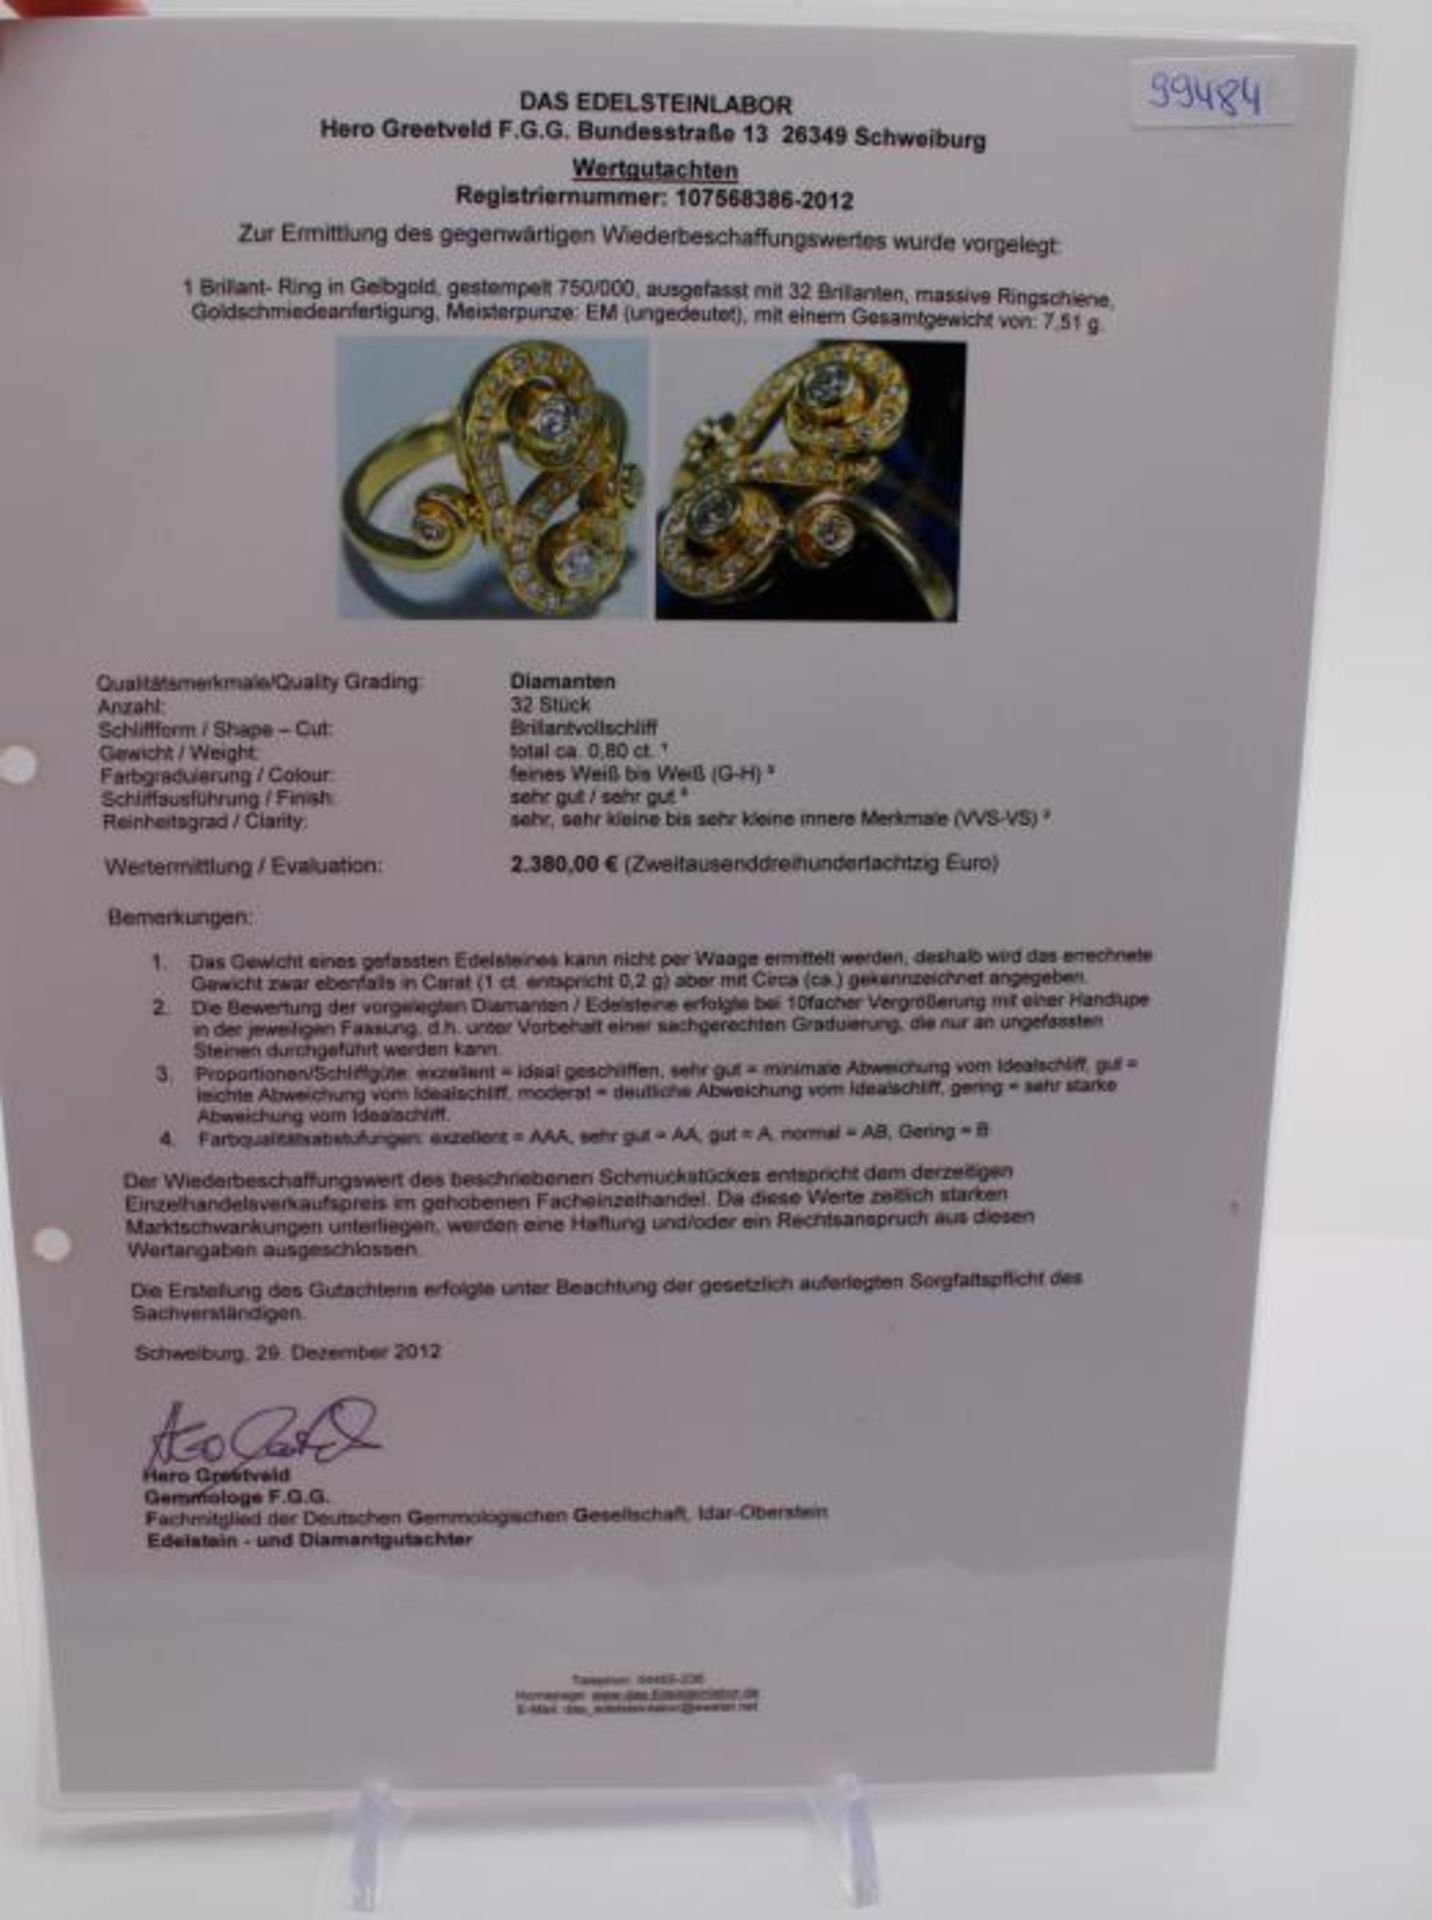 Brillant - DamenringGG 750, Goldschmiedeanfertigung, Meisterpunze EM (ungedeutet), stilisiertes - Bild 5 aus 5